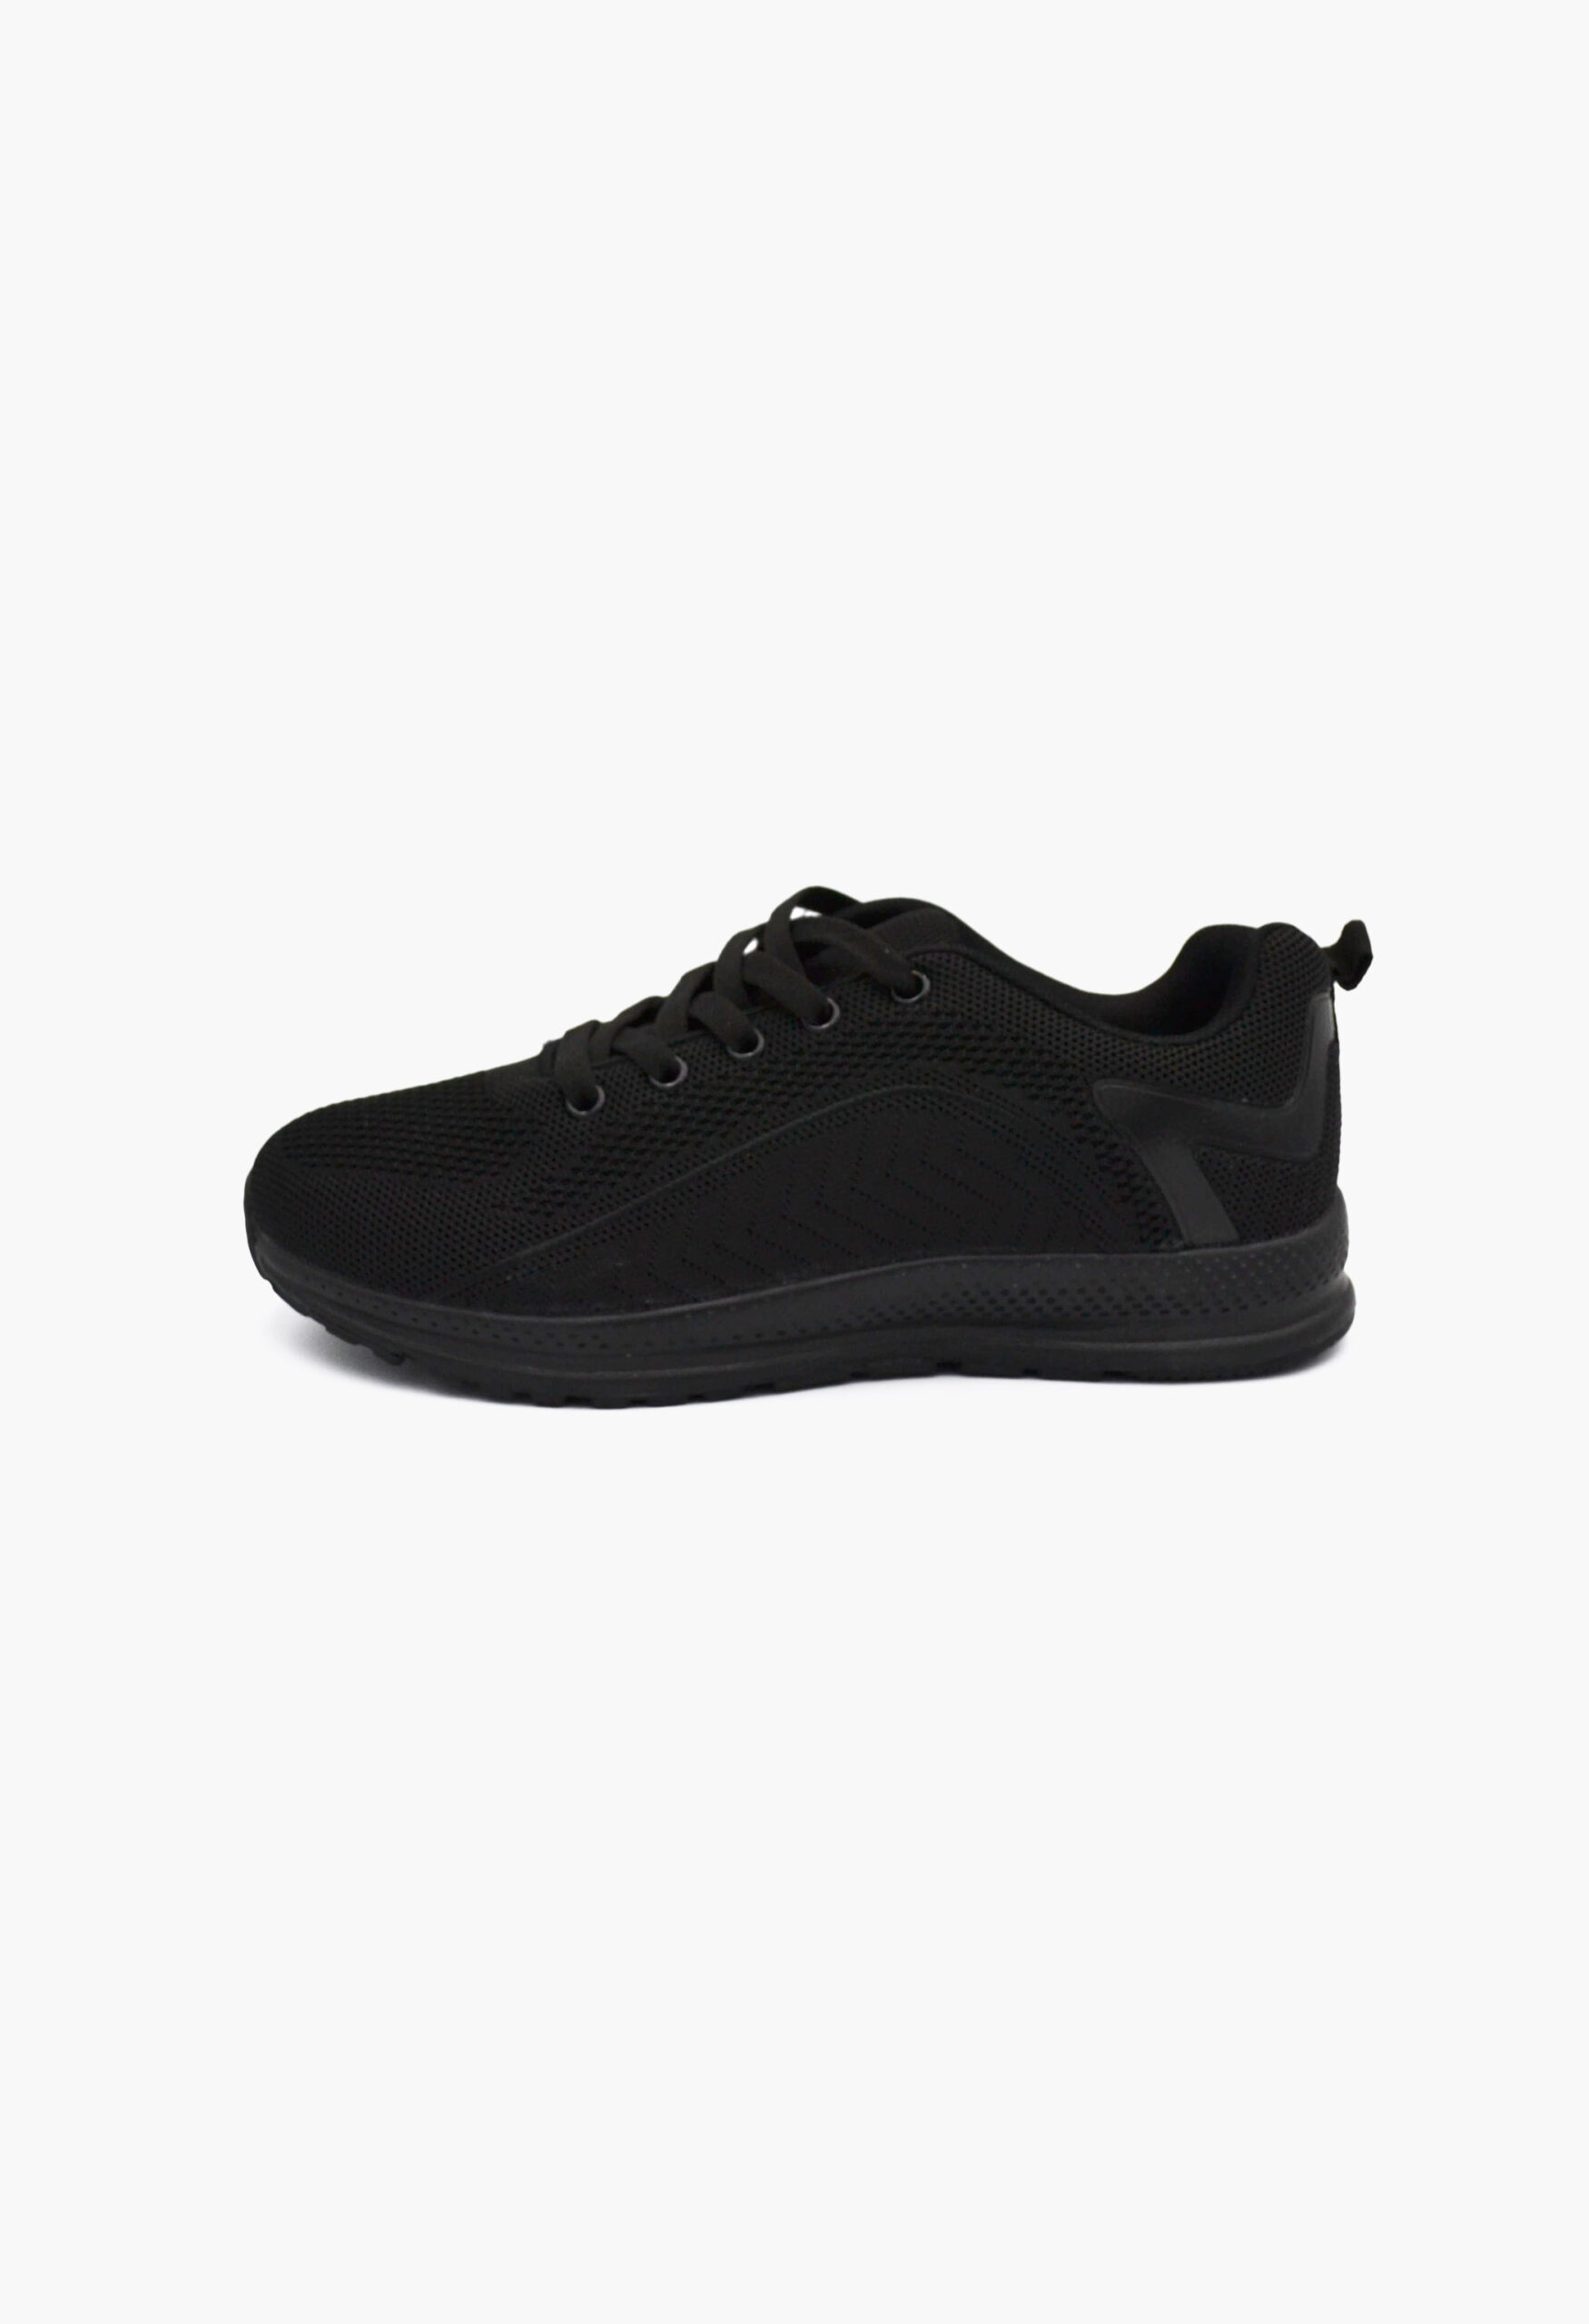 Αθλητικά Παπούτσια για Τρέξιμο Μαύρo / B-1212-6-black Γυναικεία Αθλητικά και Sneakers joya.gr